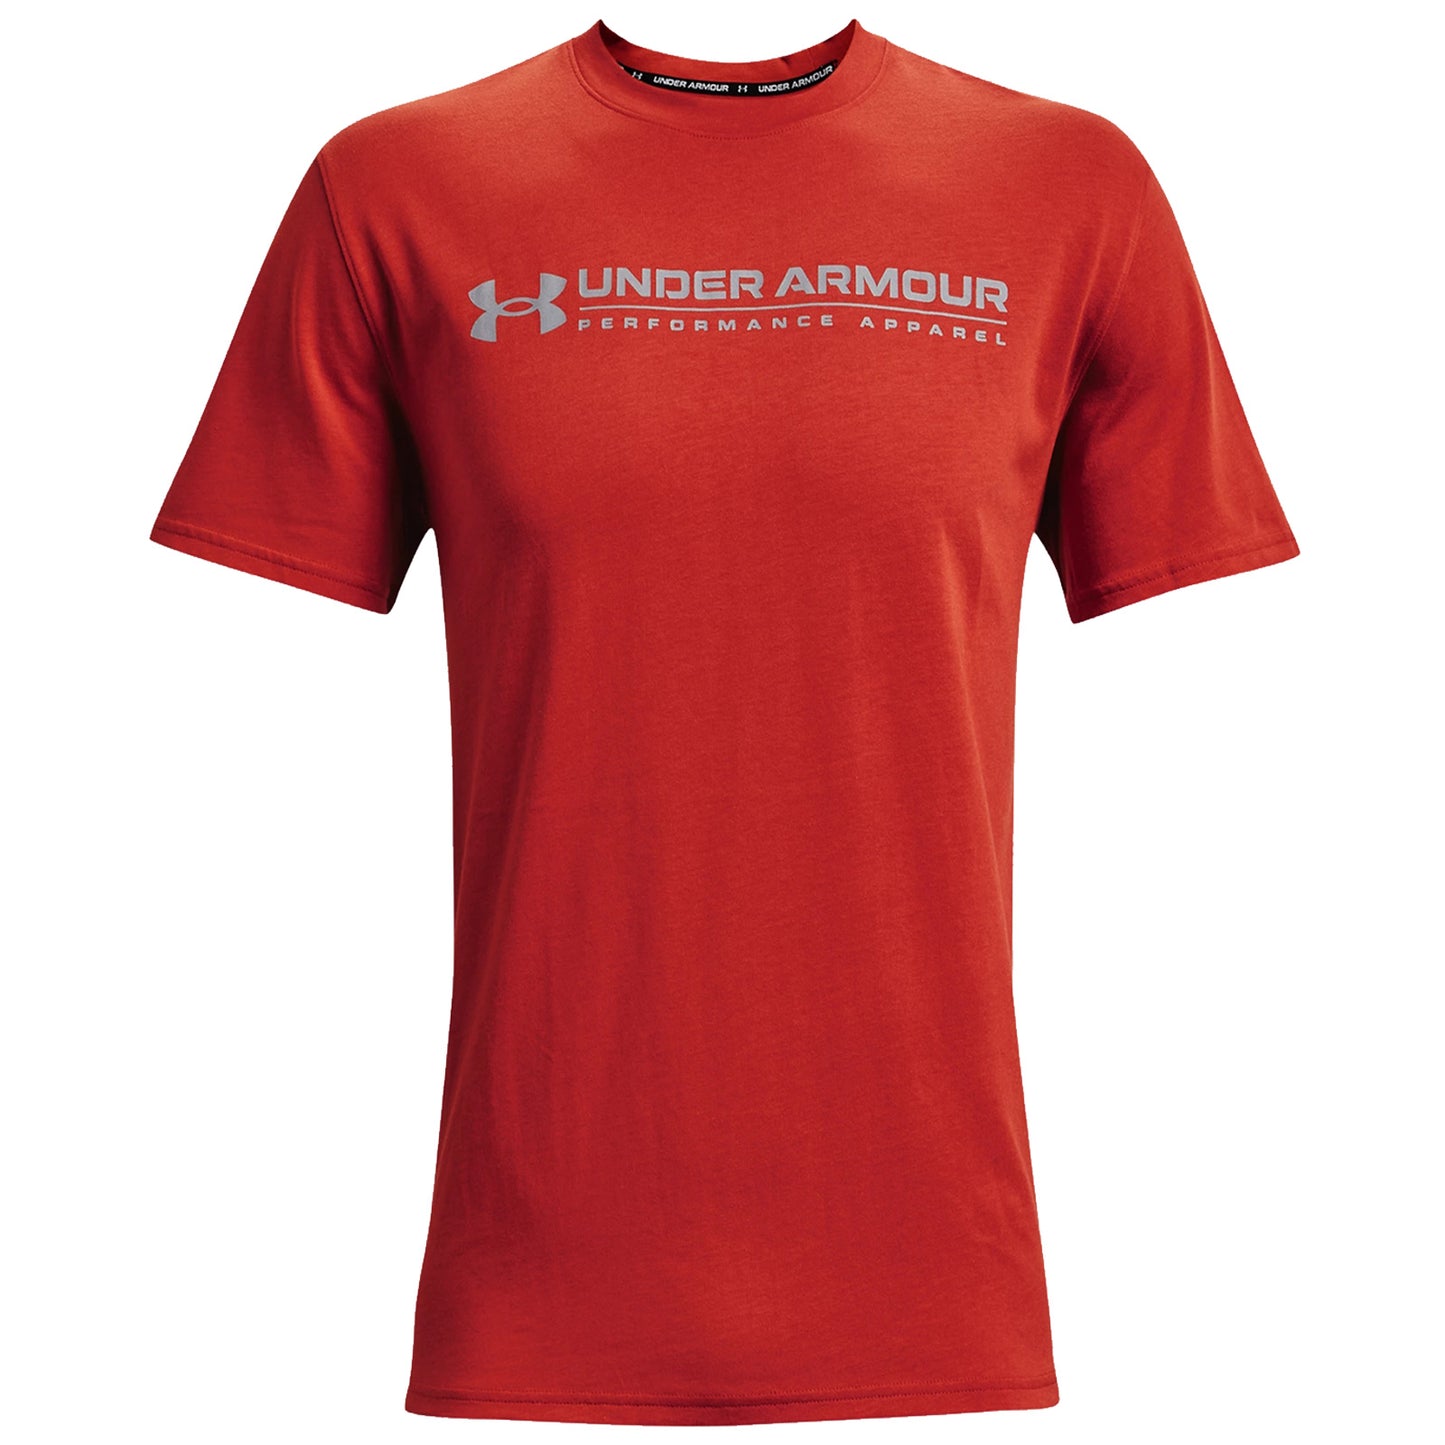 Under Armour Mens Signature Vortex T-Shirt